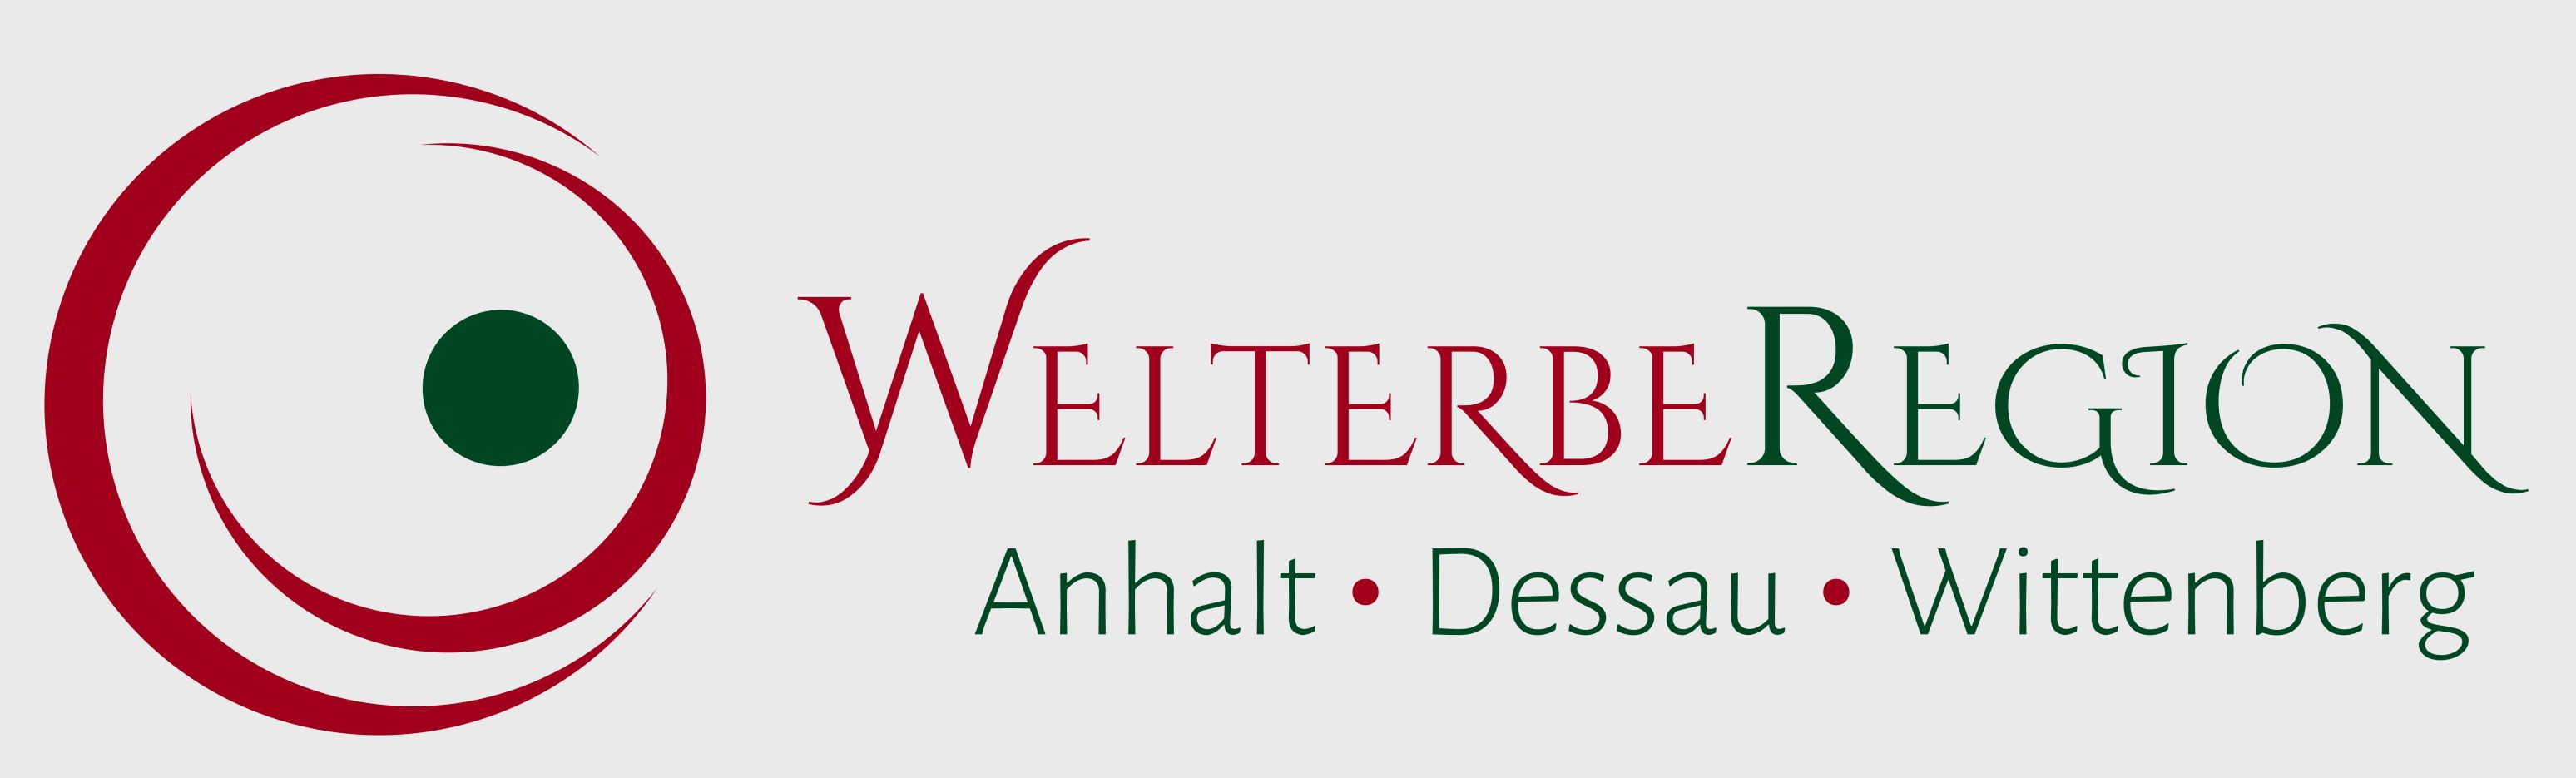 WelterbeRegion Anhalt-Dessau-Wittenberg